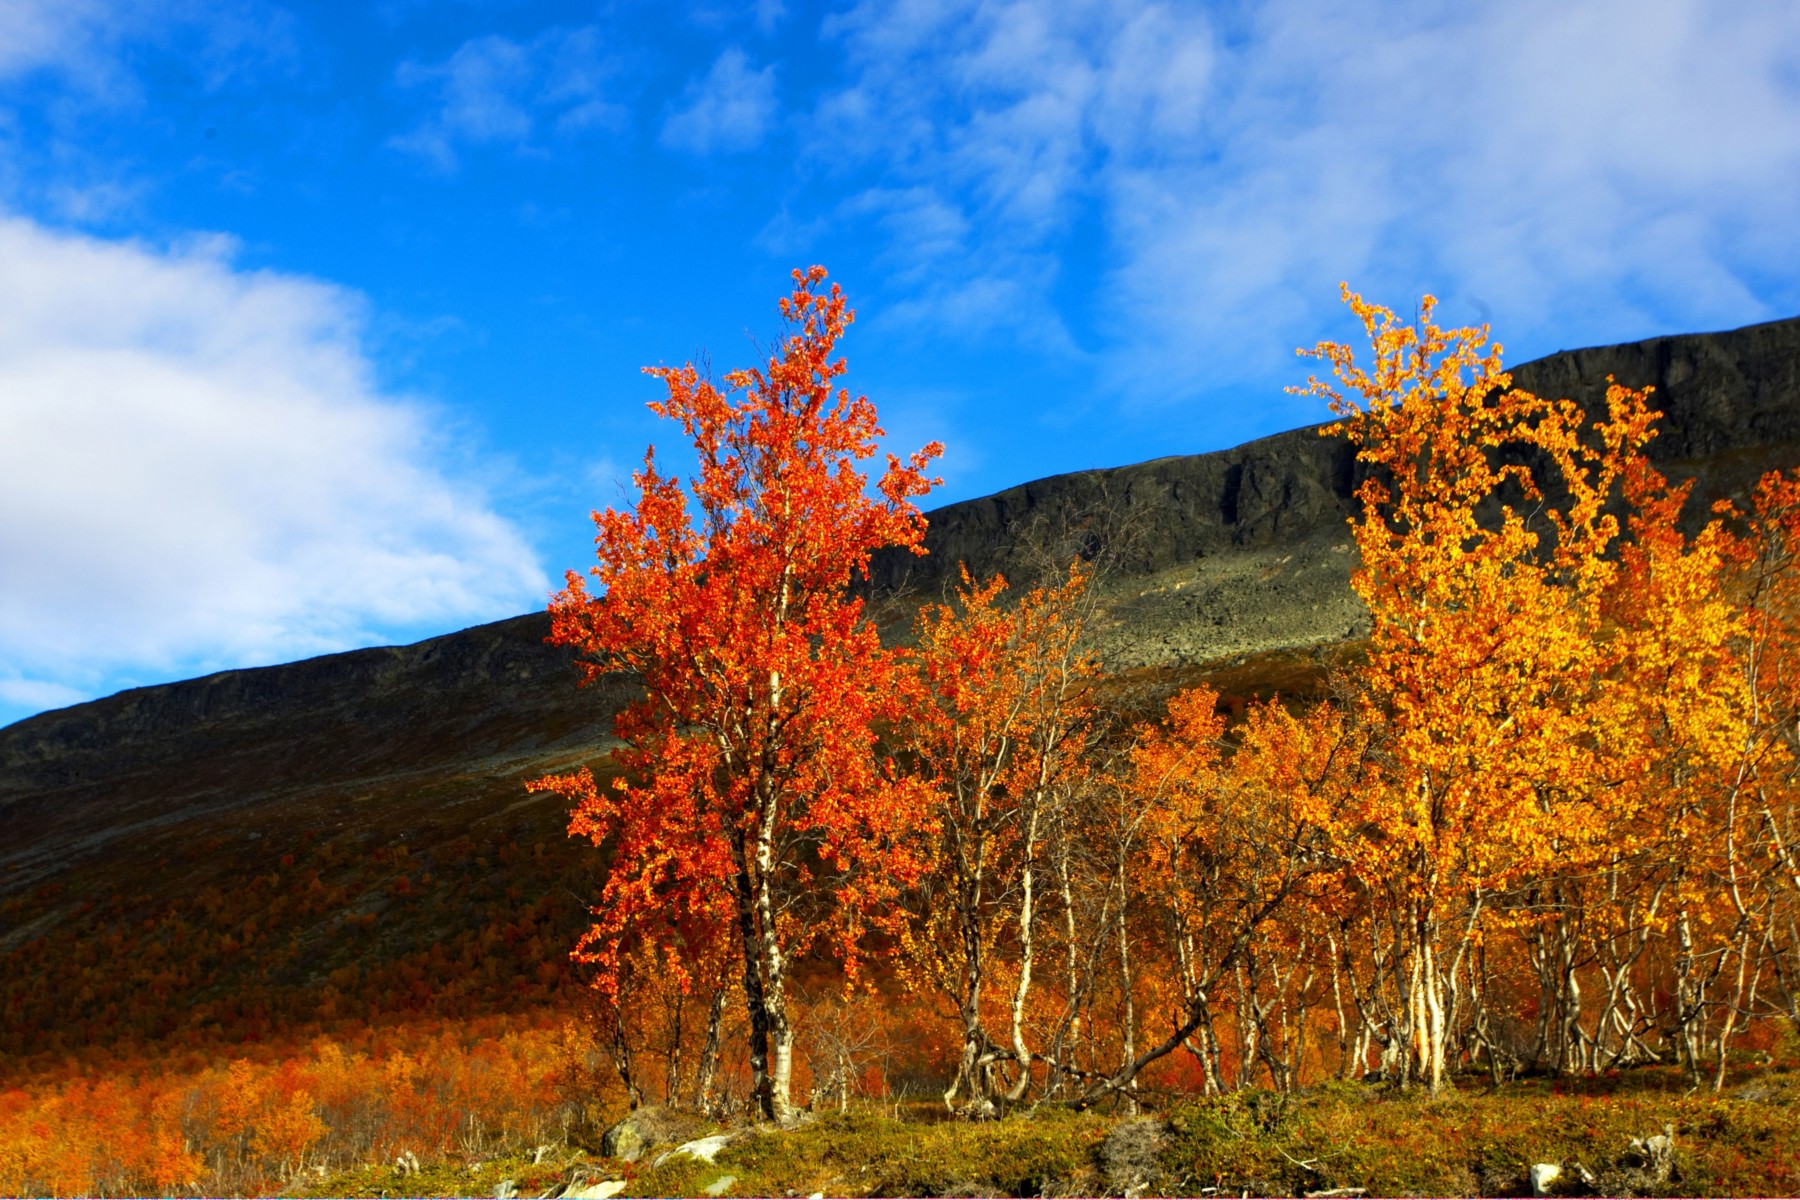 تظهر في الأمام عدة أشجار ذات أوراق الخريف الحمراء والبرتقالية، وتل أخضر وسماء زرقاء في الخلفية.